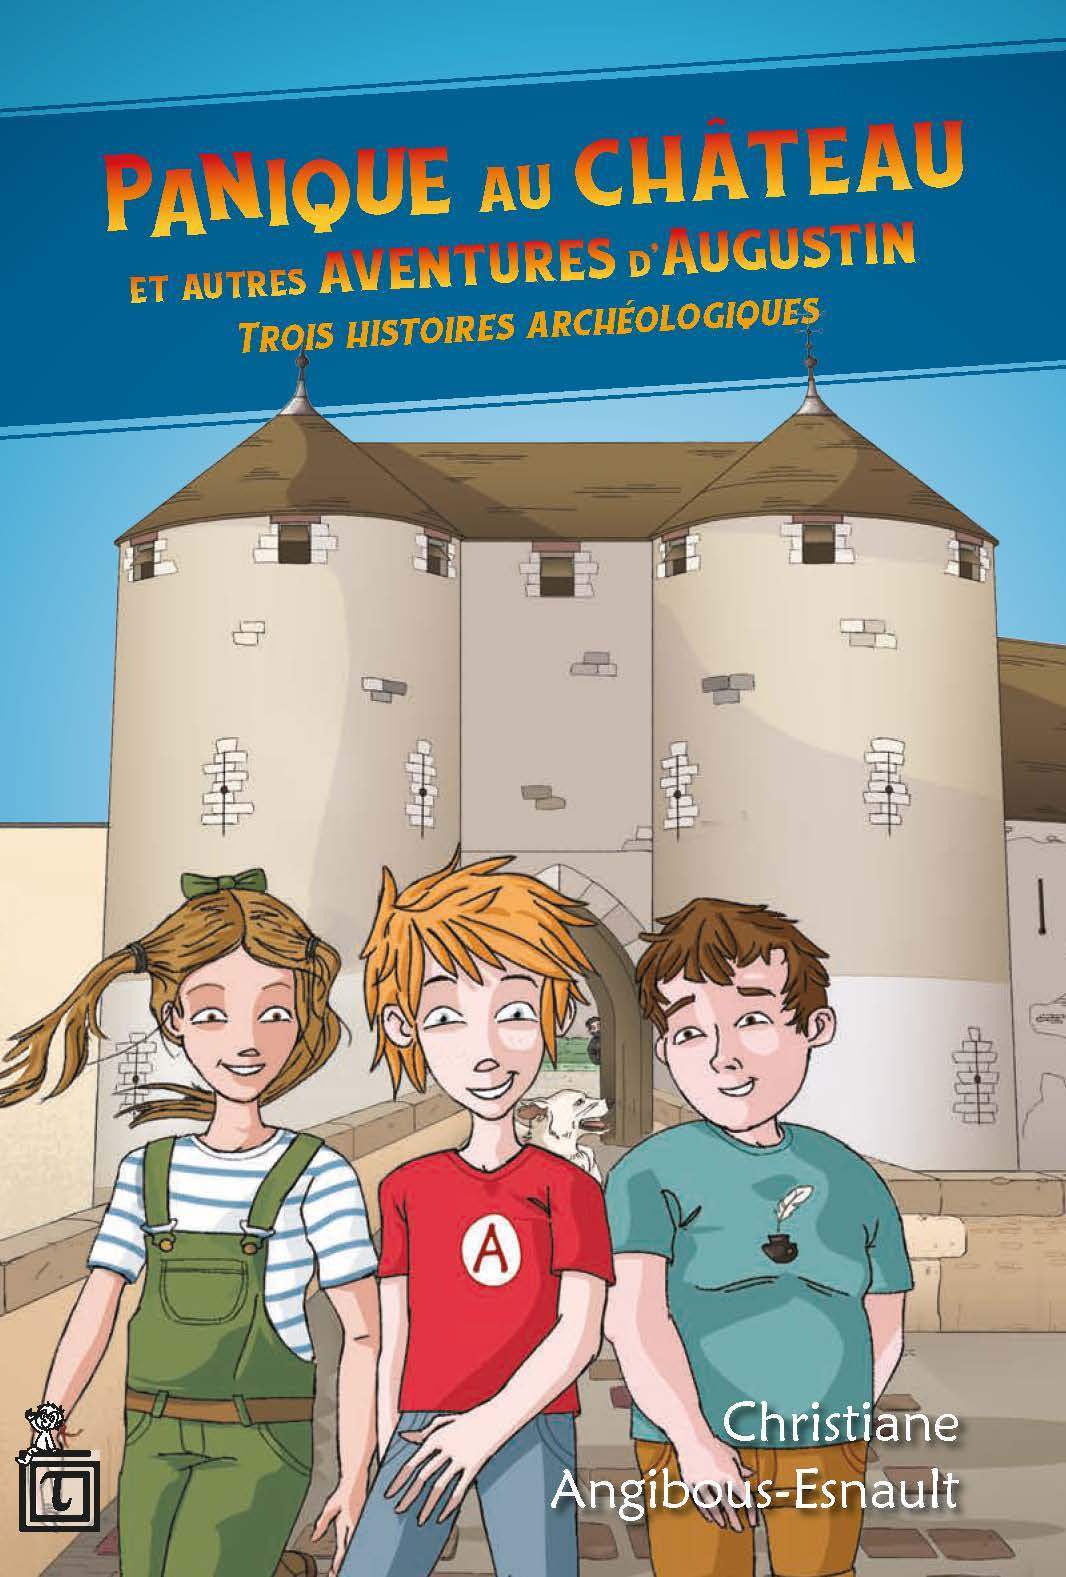 Couverture du roman Panique au château. Trois aventures archéologiques d'Augustin © ArkéoTopia - Gransard-Desmond, 2020